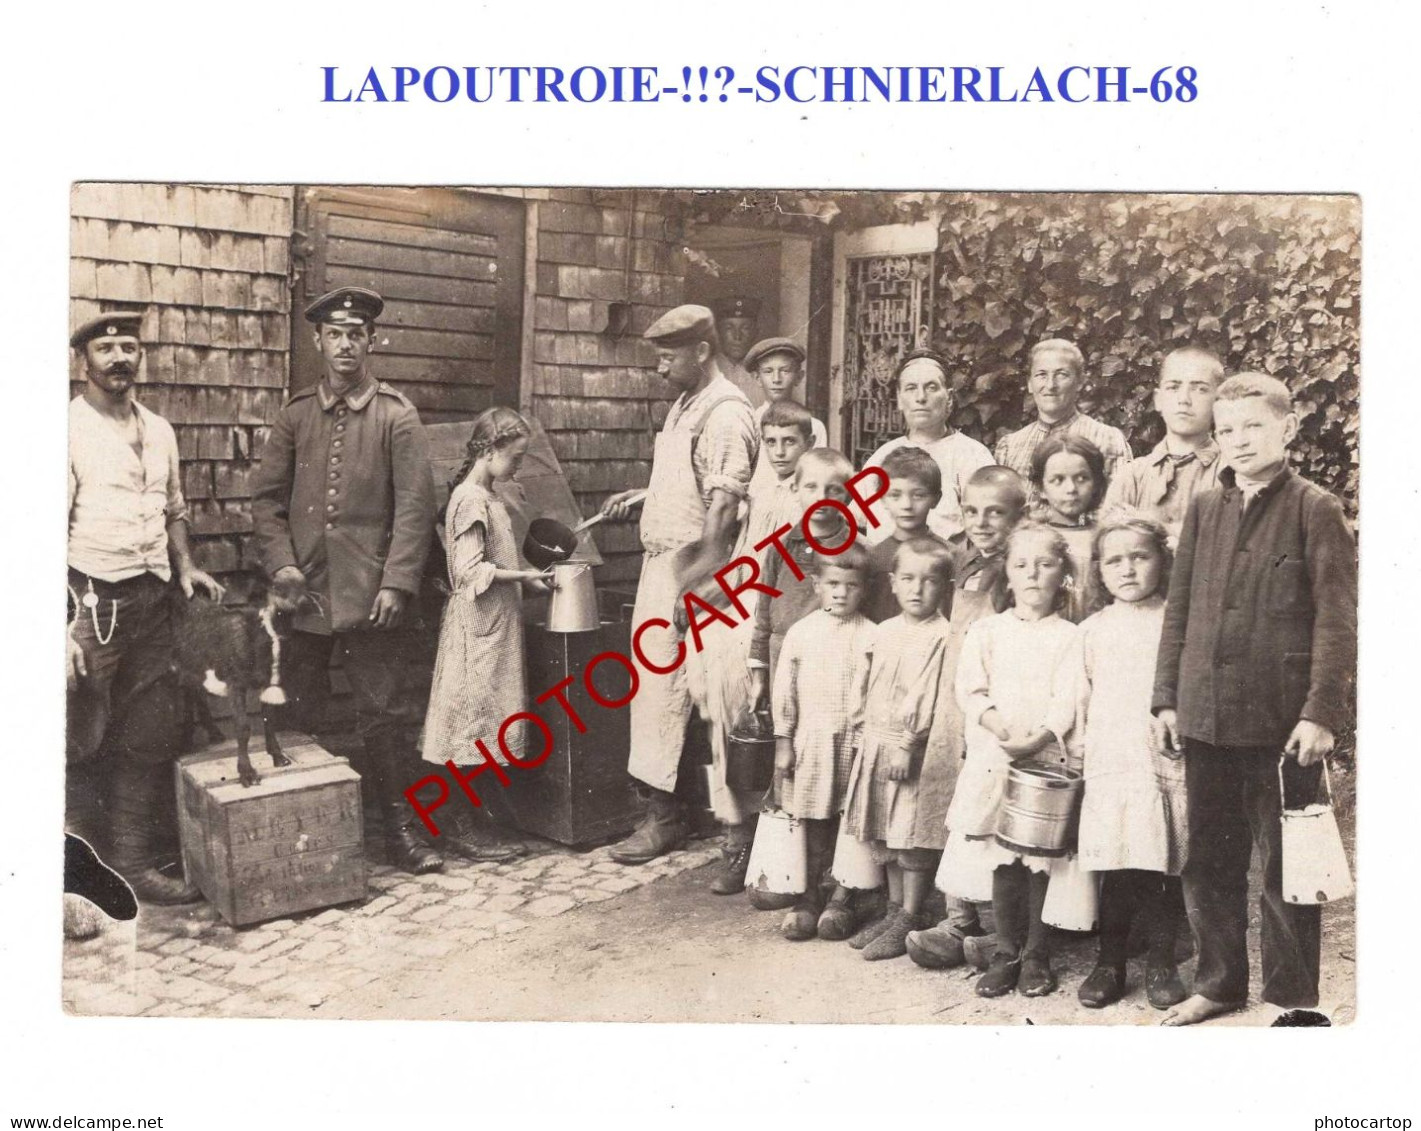 LAPOUTROIE-!!?-SCHNIERLACH-68-Enfant-Repas-CARTE PHOTO Allemande-Guerre14-18-1 WK-Militaria-France-FELDPOST- - Lapoutroie